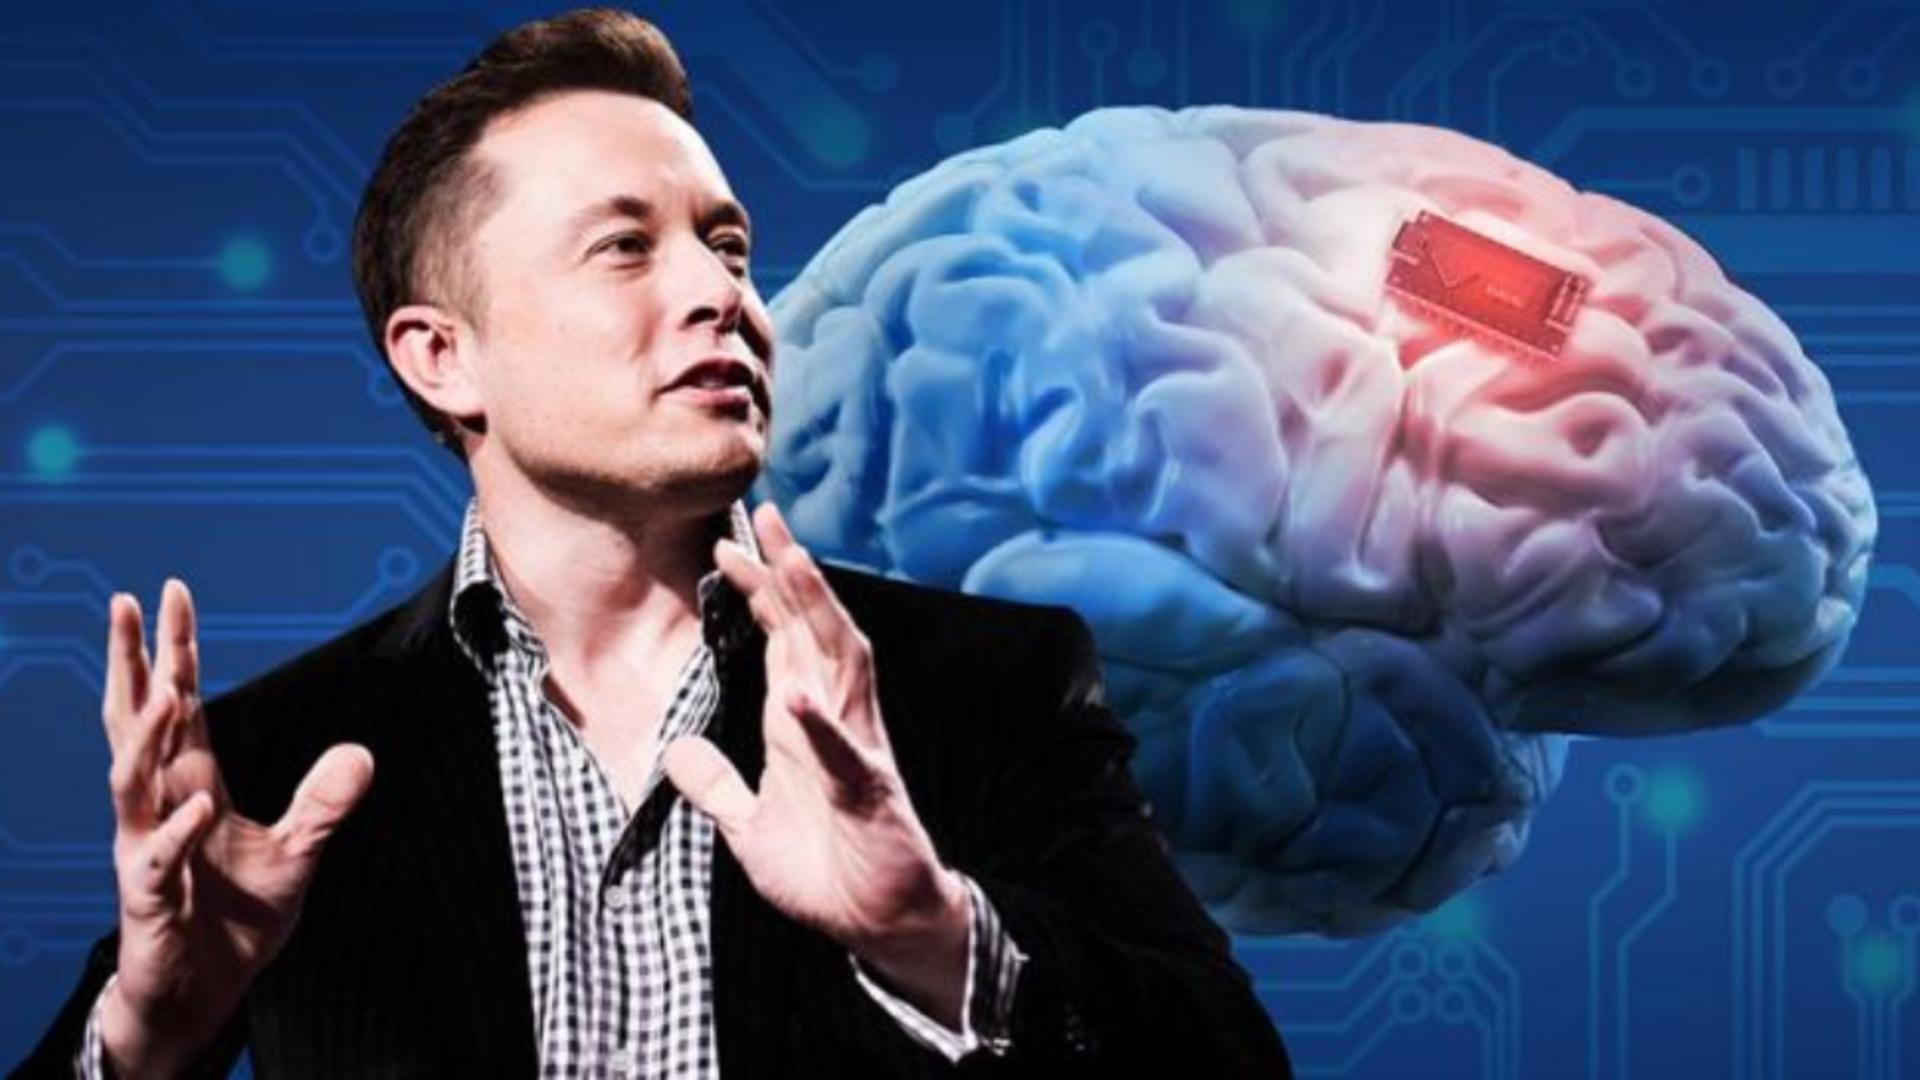 Primul pacient cipat de Elon Musk sfidează legile naturale: "Poate controla mouse-ul unui calculator prin gândire!"